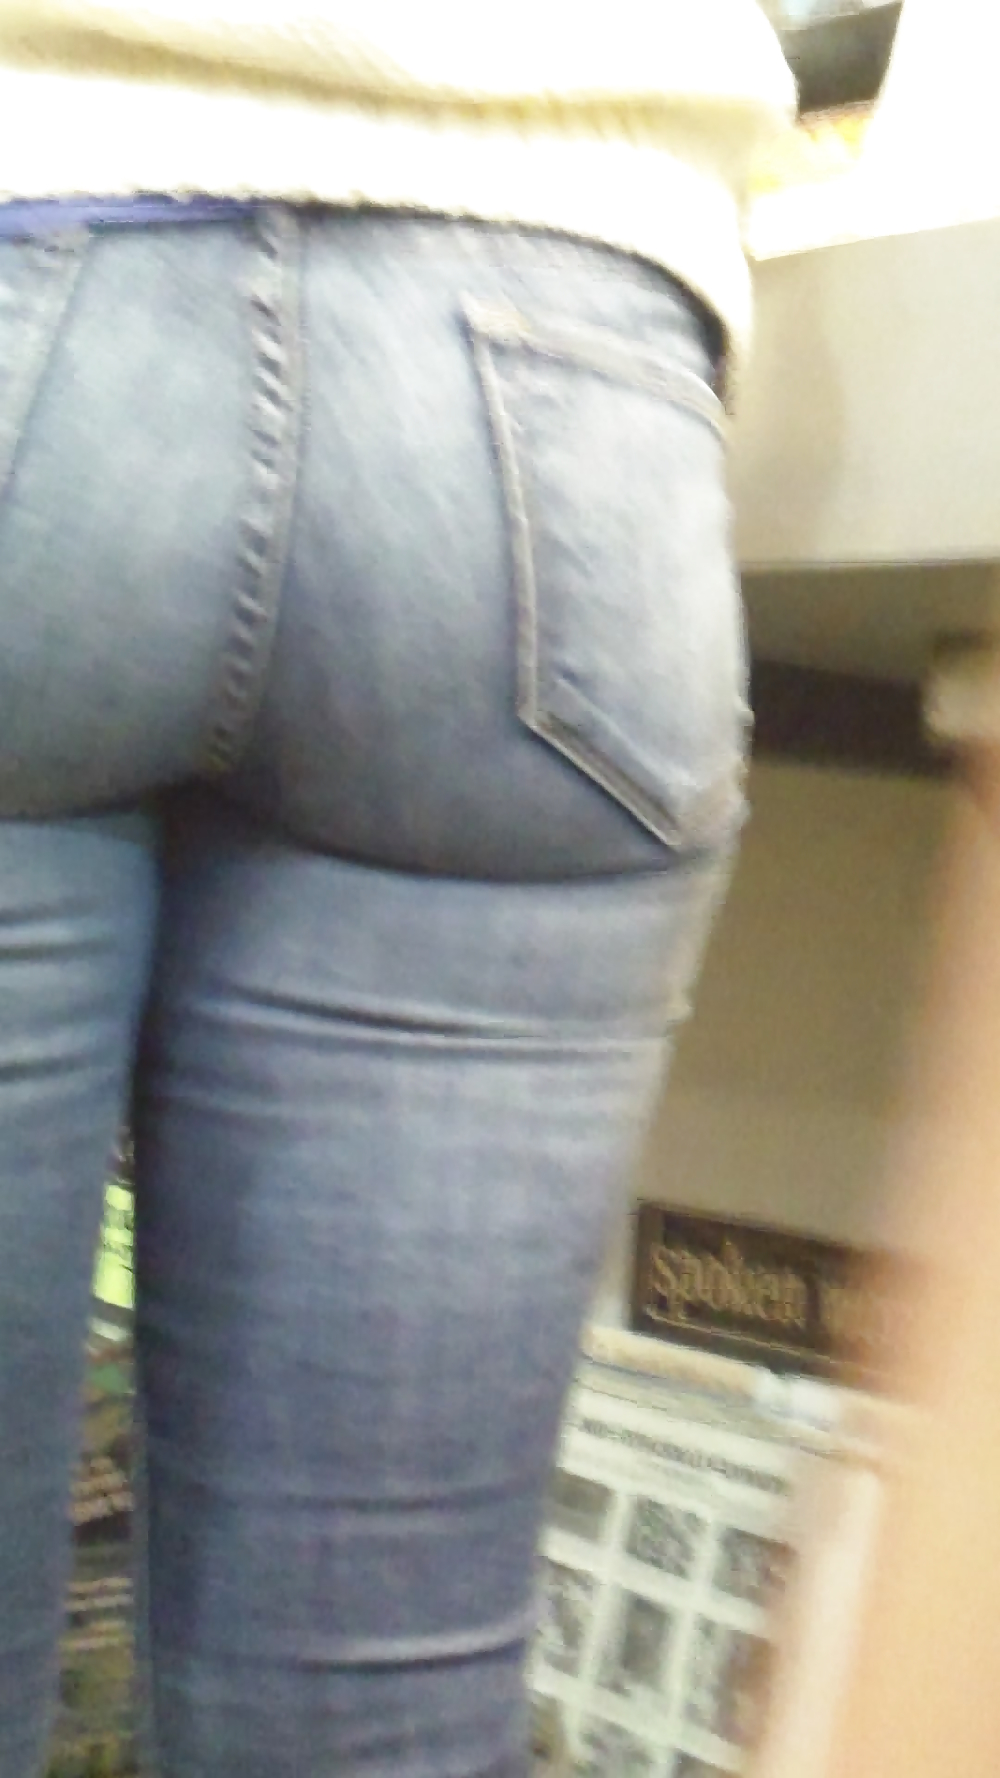 Smooth teen ass & butt in blue jeans #20904364